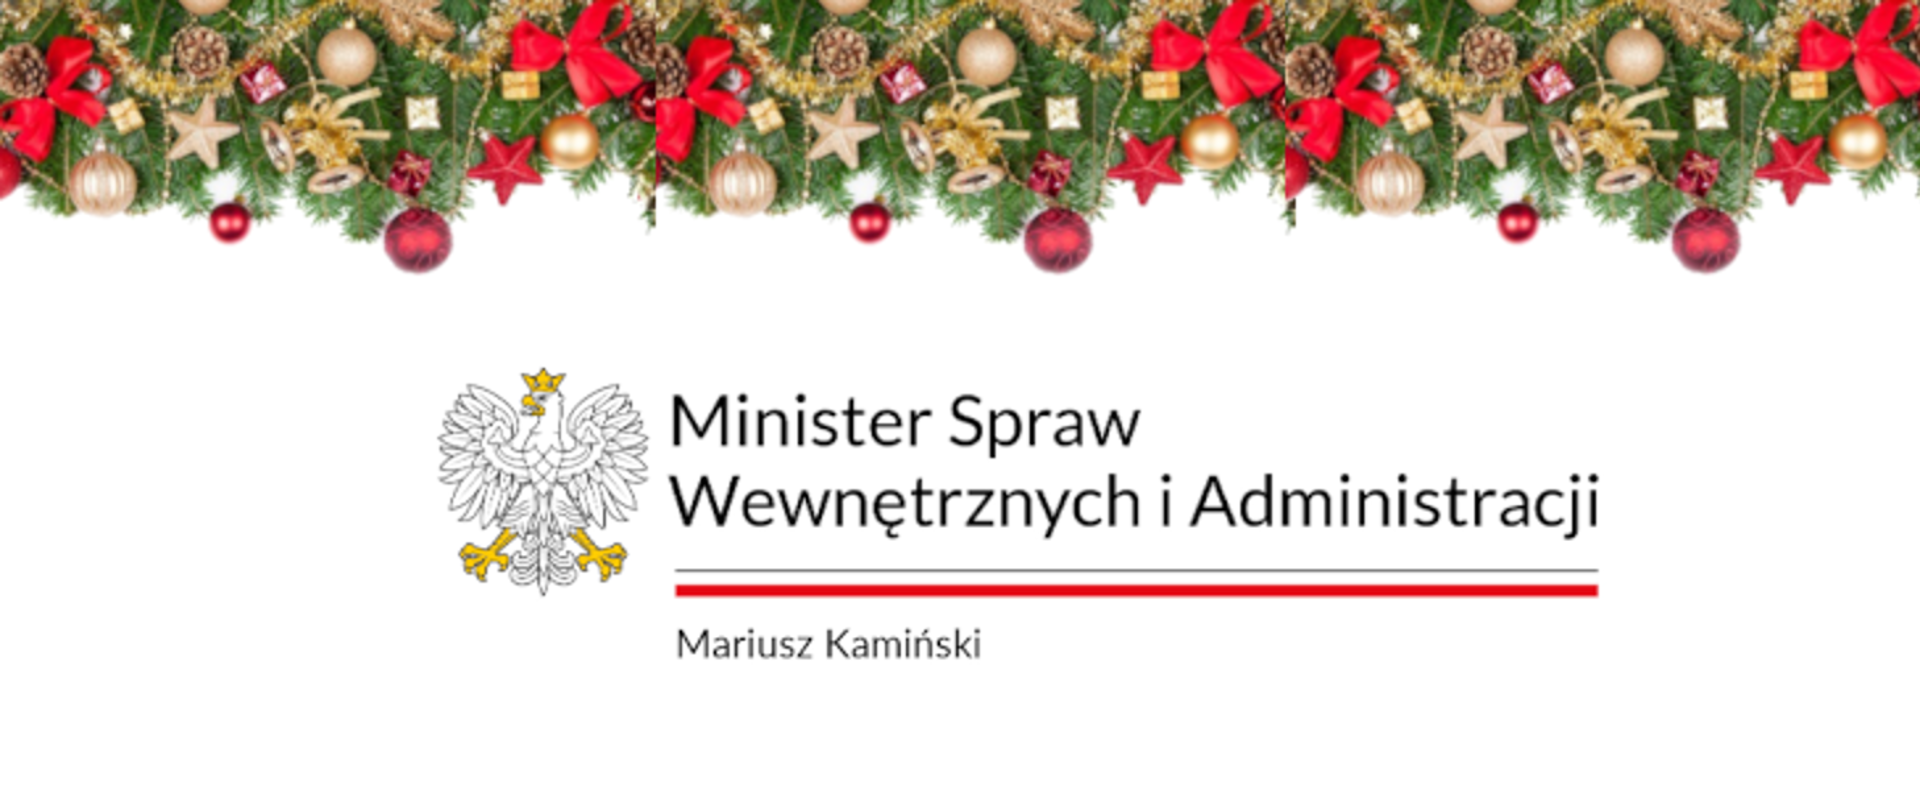 Życzenia od Ministra Spraw Wewnętrznych i Administracji z okazji Bożego Narodzenia